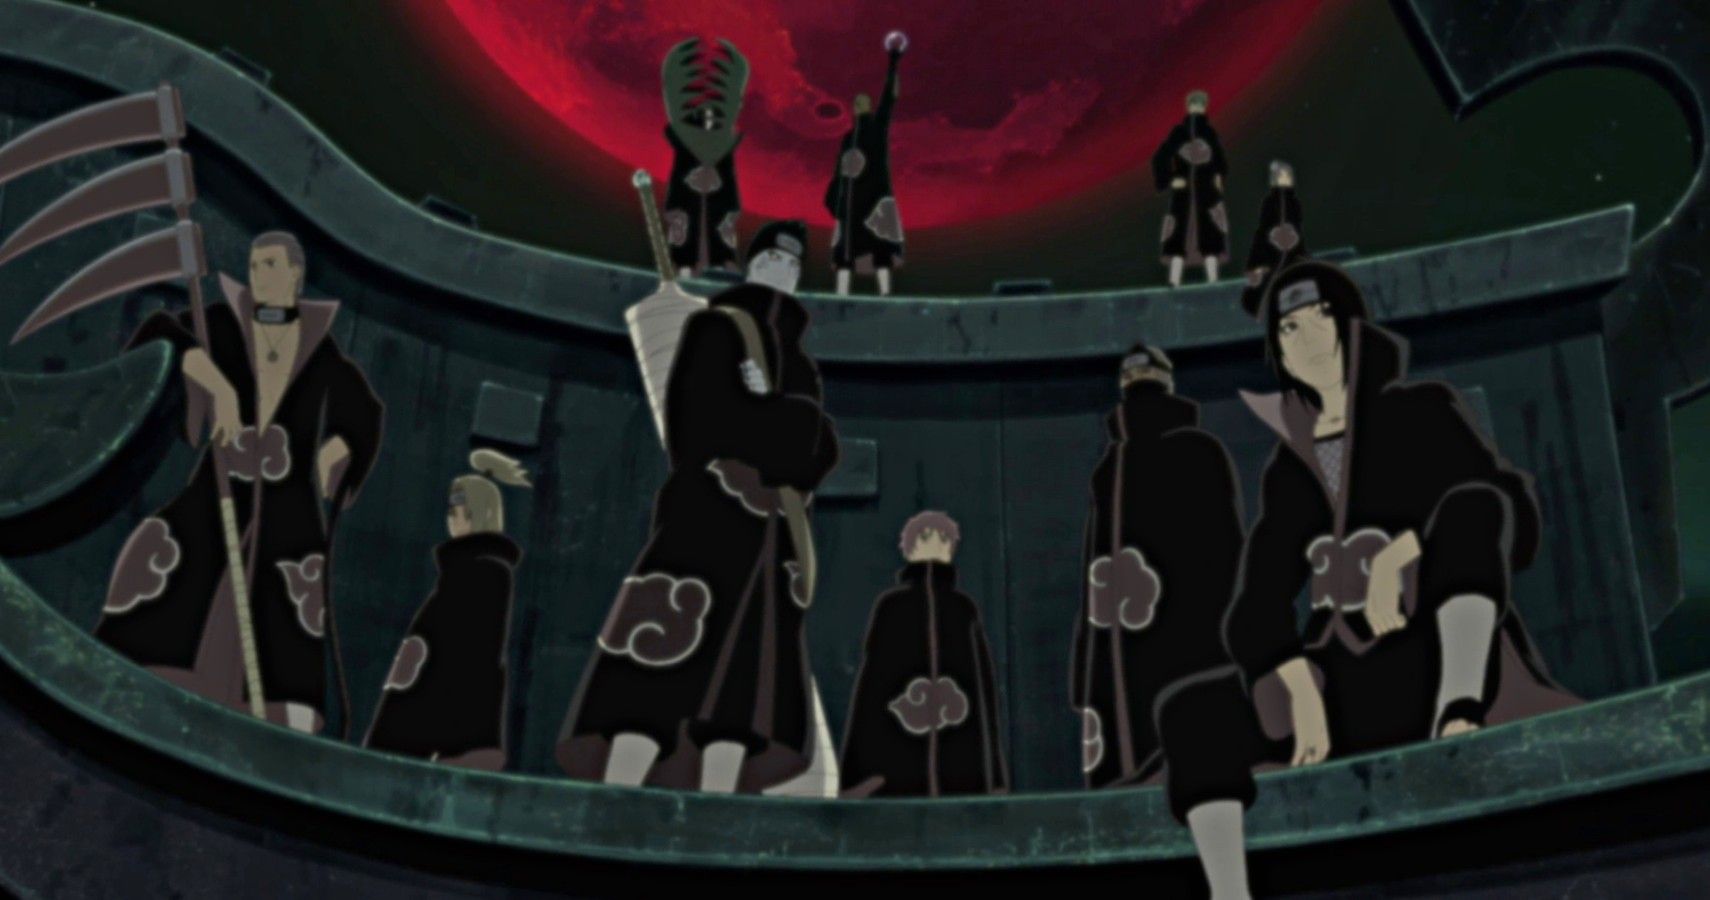 Akatsuki - 5 curiosidades sobre a Akatsuki de Naruto Shippuden que